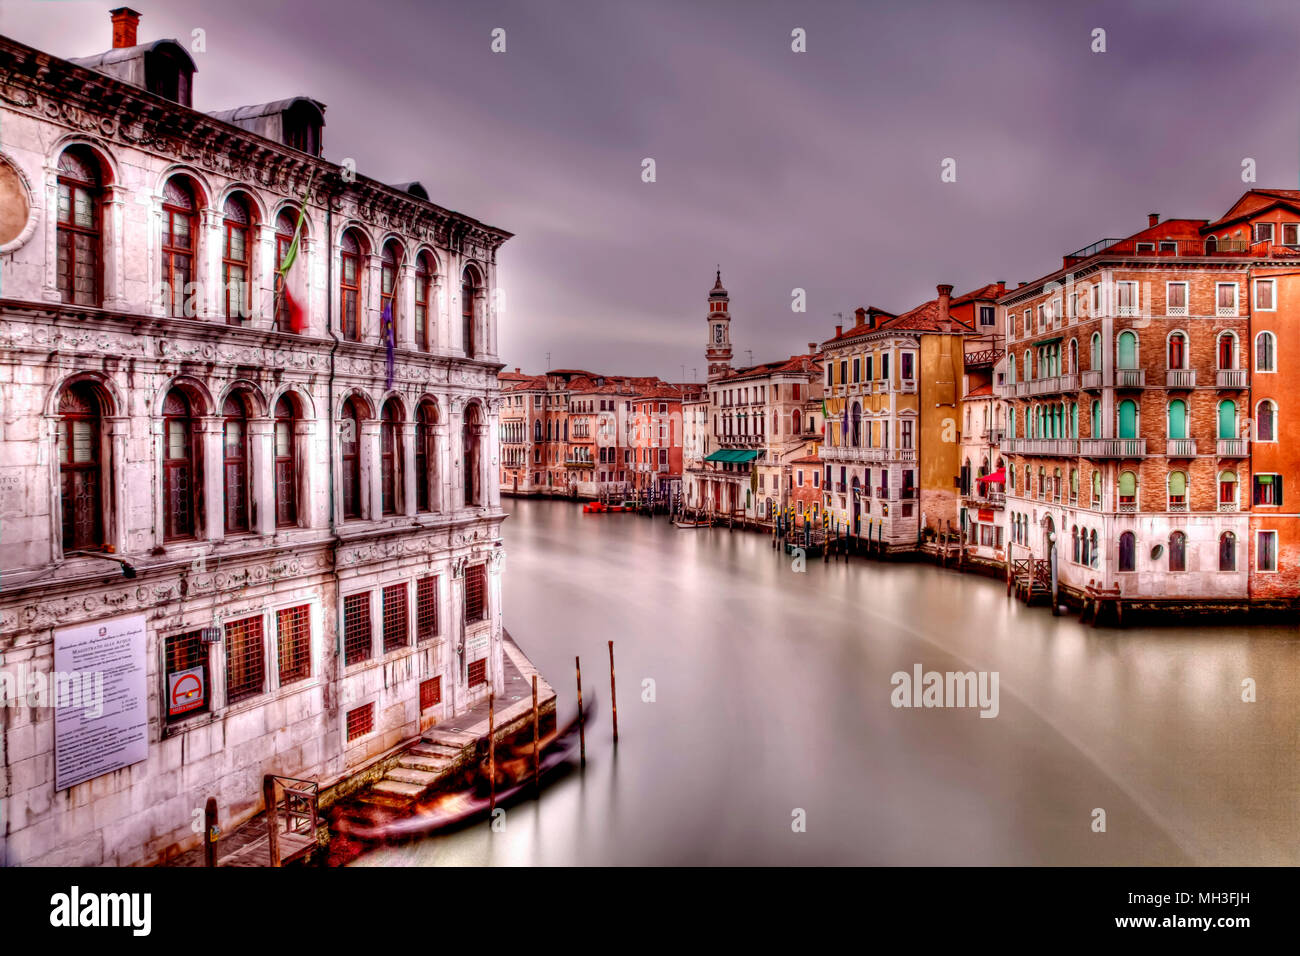 Le Grand Canal et l'architecture de Venise, Venise, Italie Banque D'Images